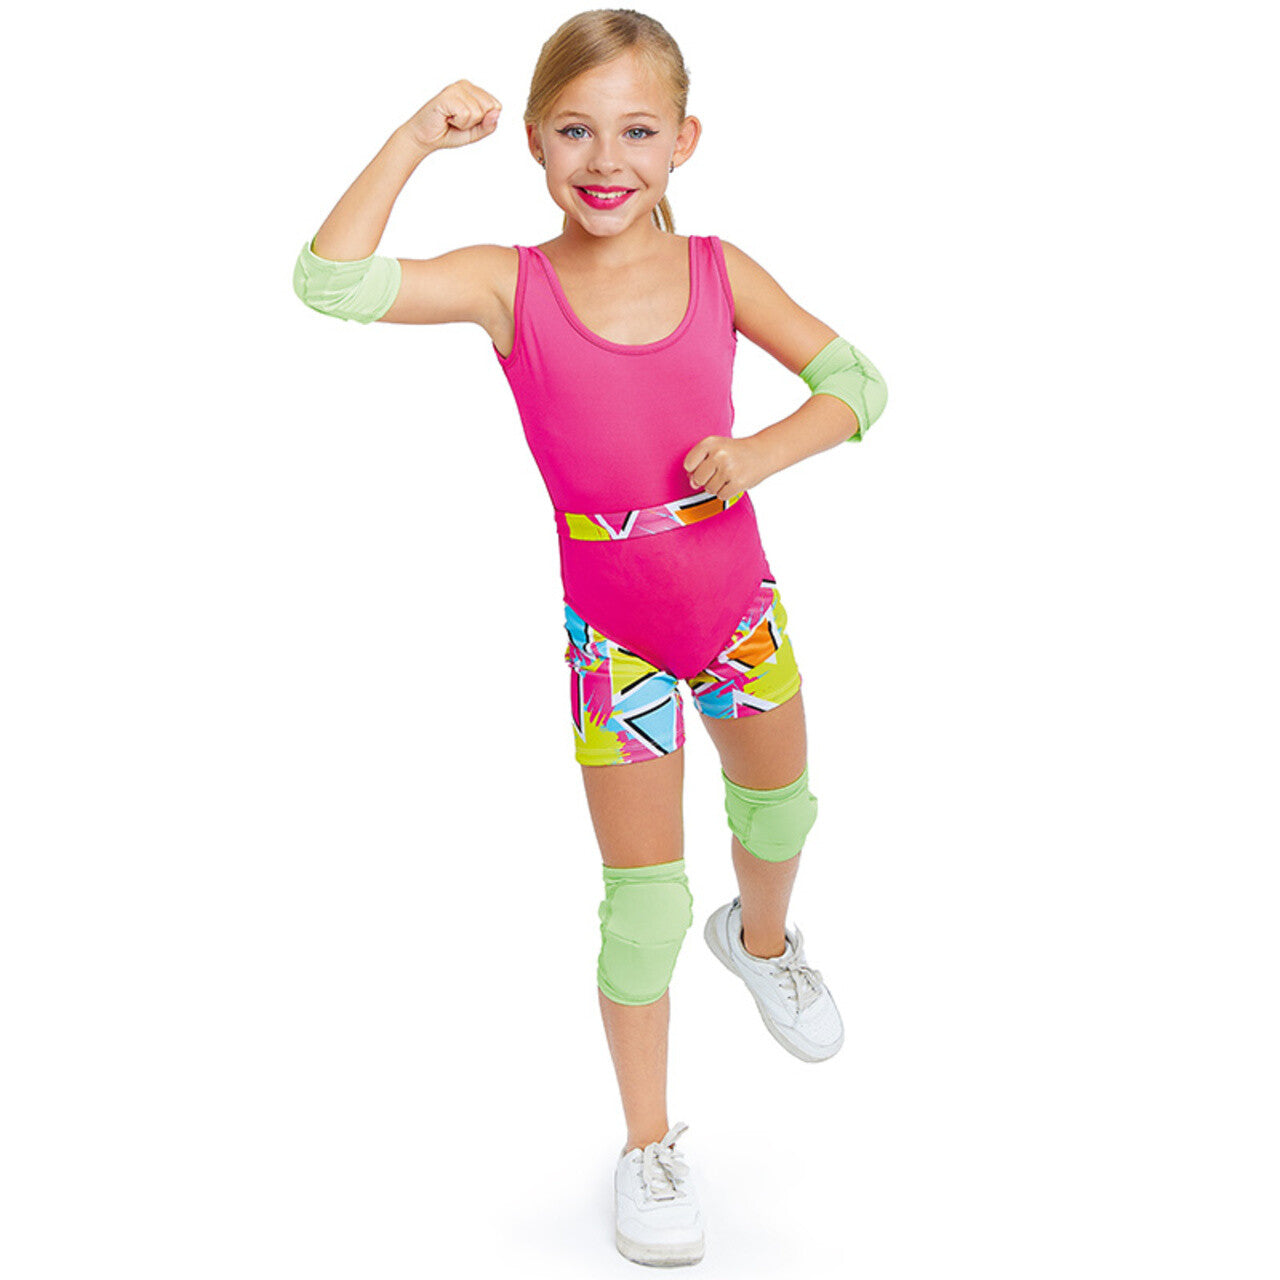 Acquista online il costume da Barbie Skater per bambina